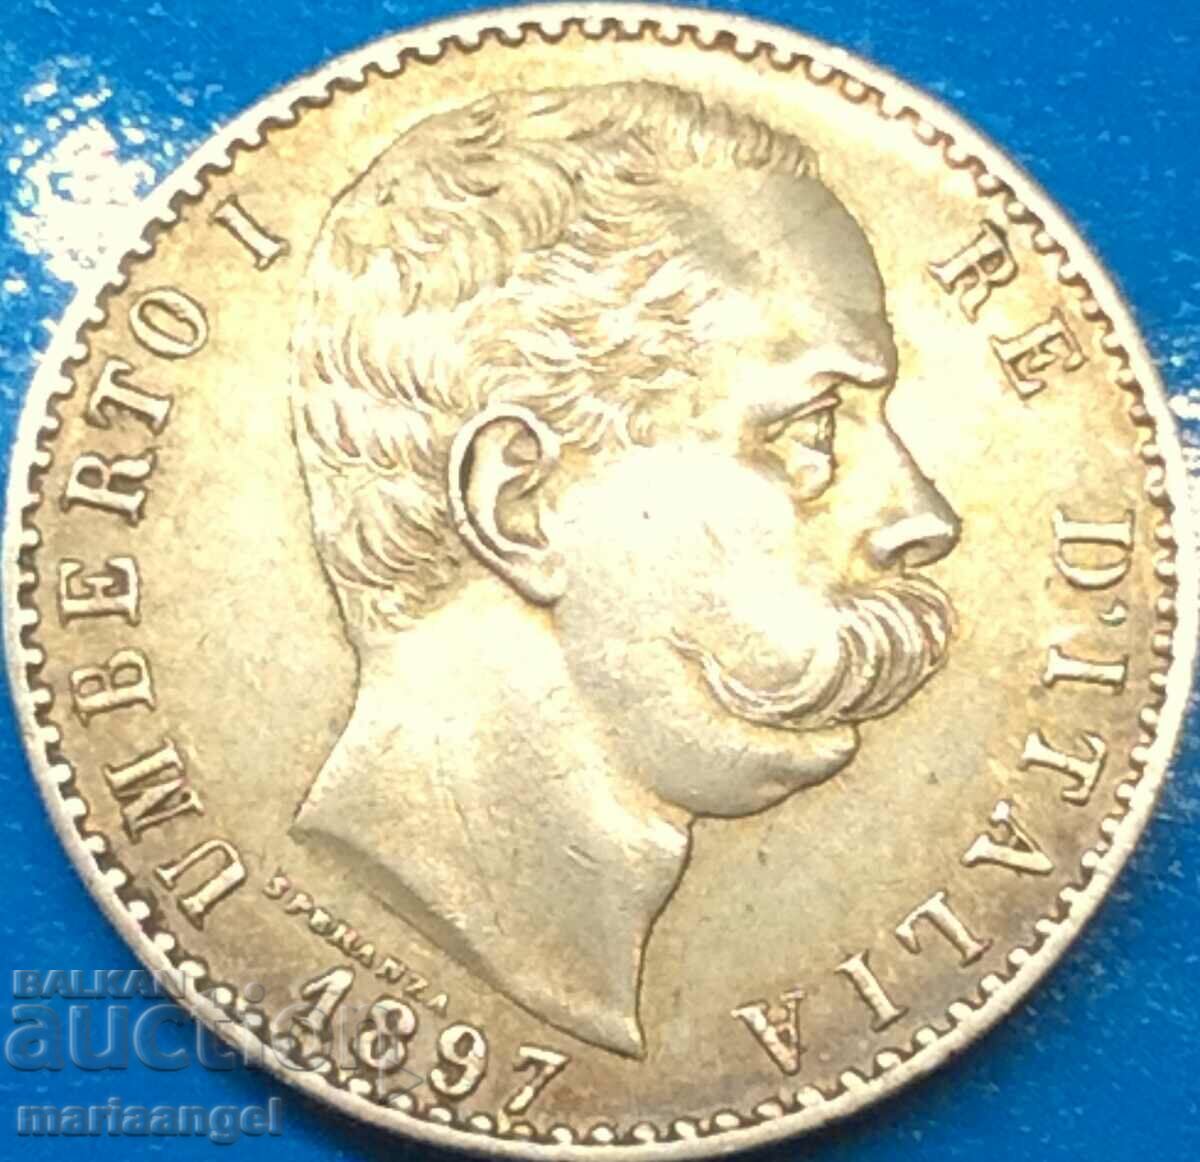 2 lire 1897 Italy Umberto I light gold patina